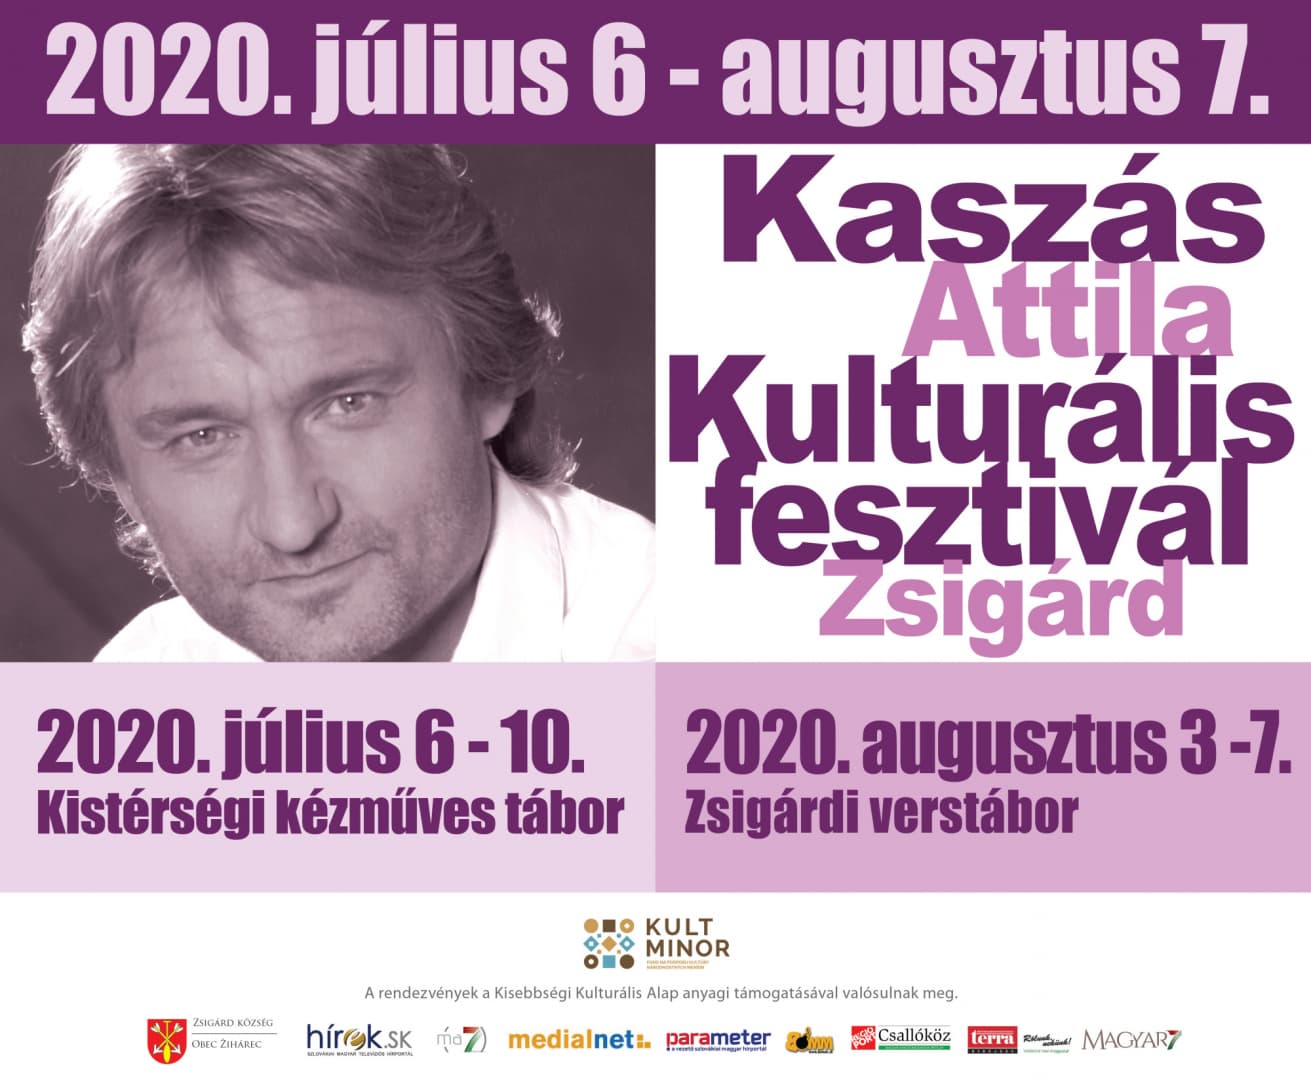 Kaszás Attila Kulturális fesztivál 2020